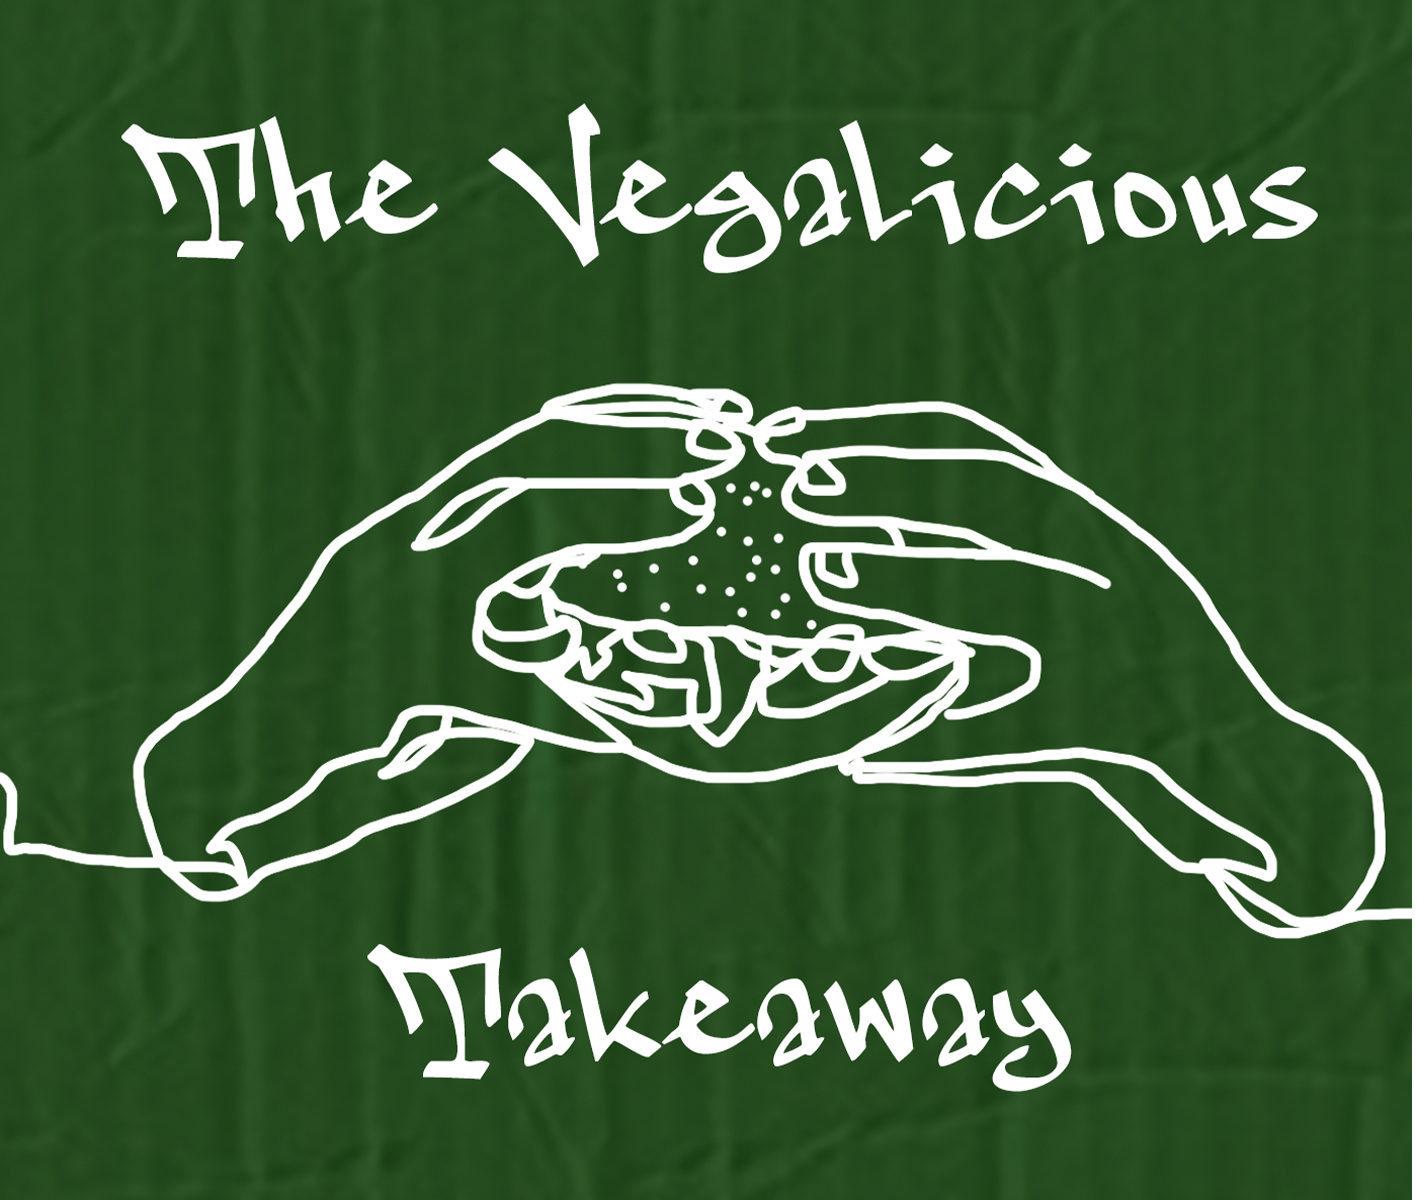 The Vegalicious Takeaway logo